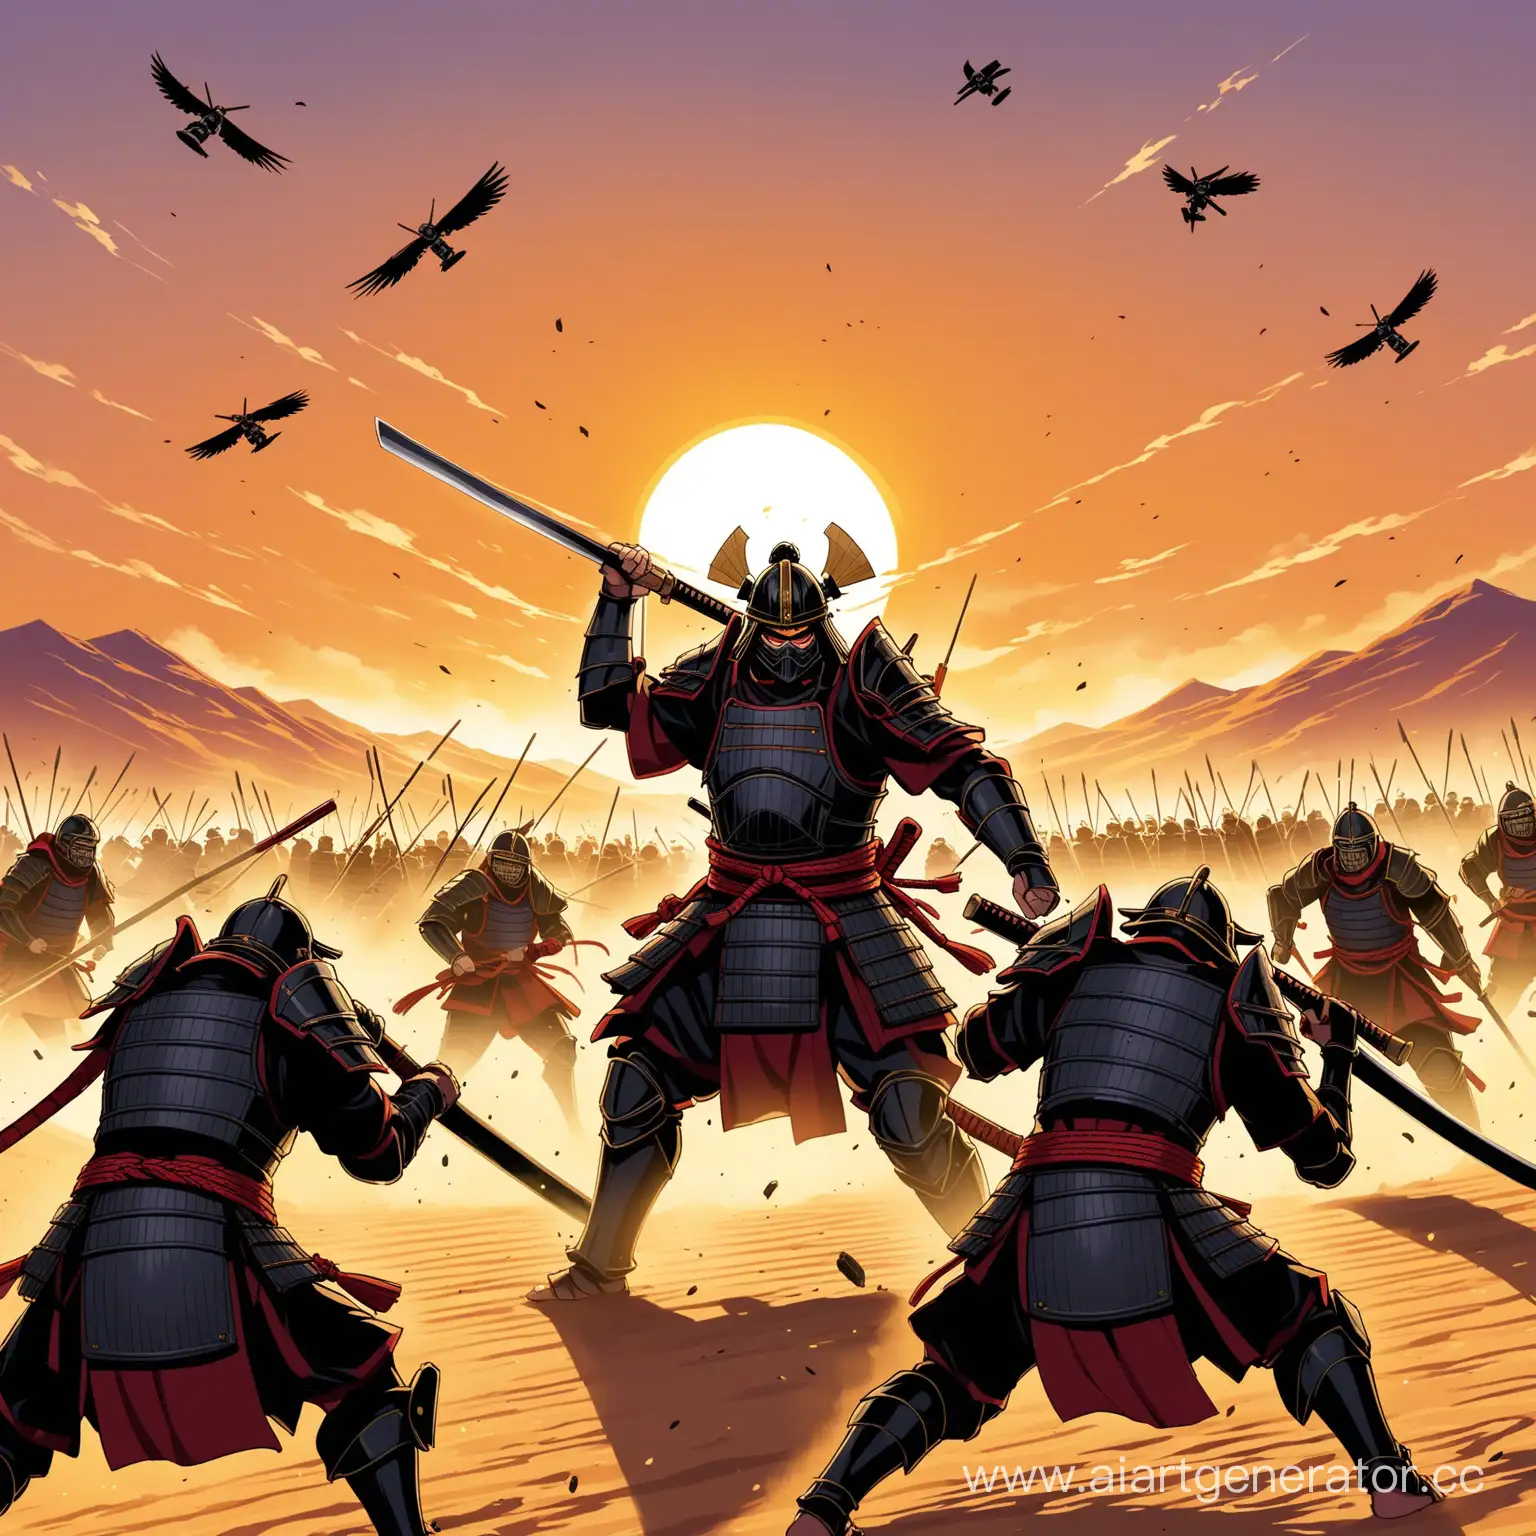 Сегун с работизированой конечностью  сражается с шиноби на фоне противостояния легионеров и самураев в пустыне на закате с осадными орудиями и градом дротиков, протыкающих насквозь бойцов

